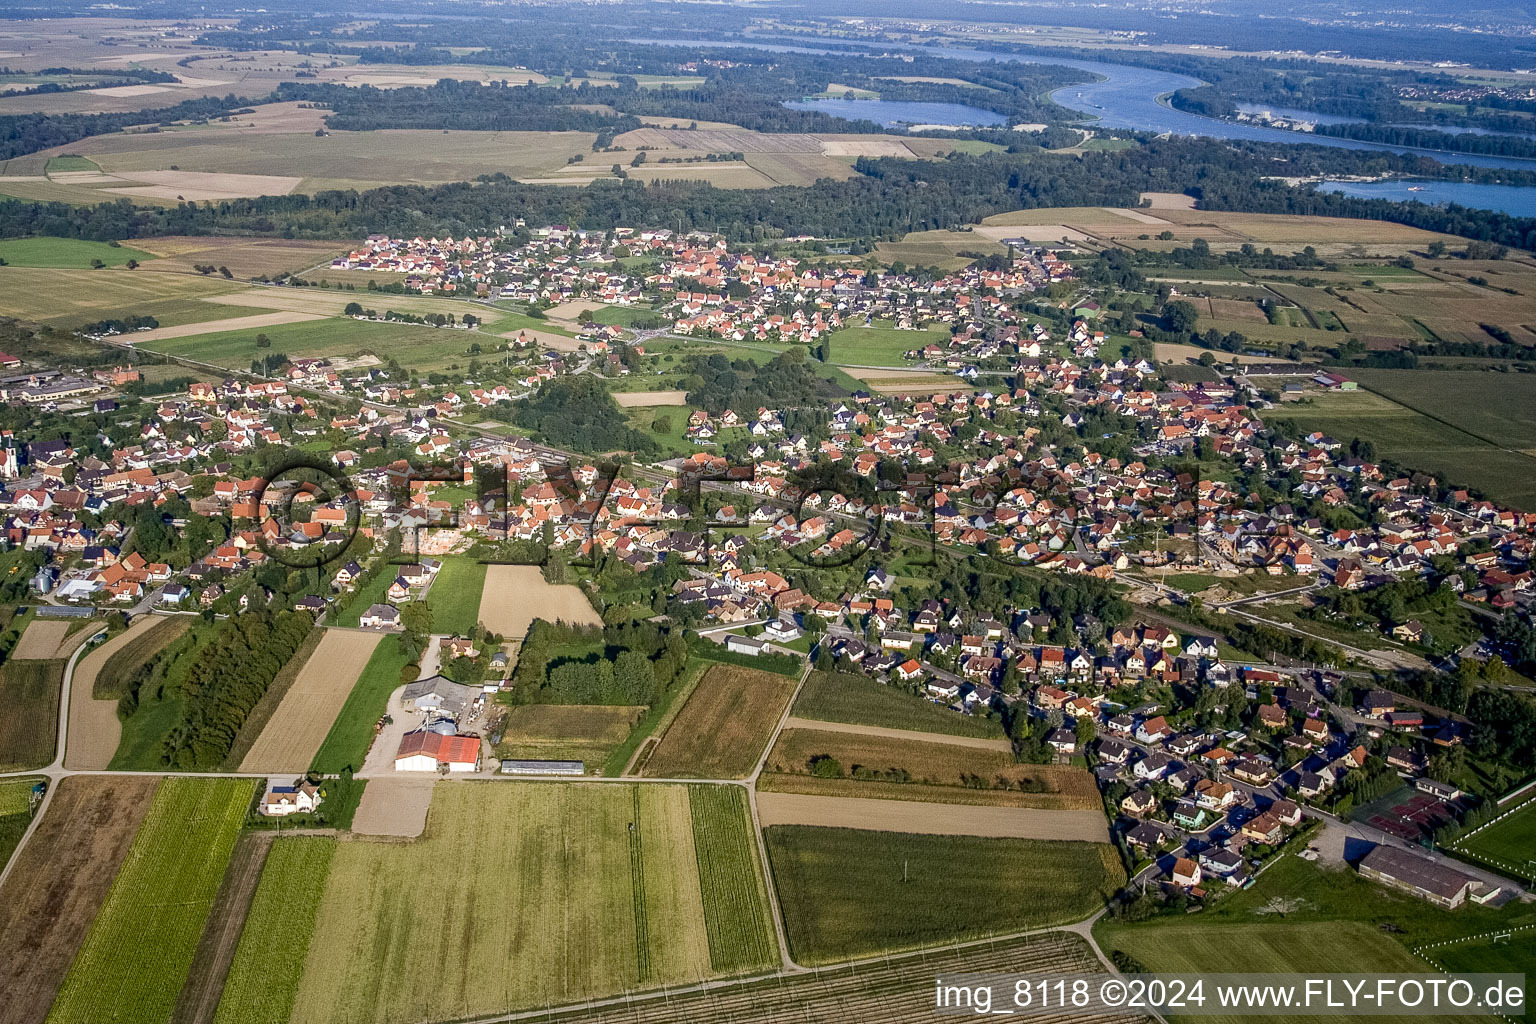 Luftbild von Dorf - Ansicht am Rande von landwirtschaftlichen Feldern und Nutzflächen in Sessenheim in Grand Est im Bundesland Bas-Rhin, Frankreich